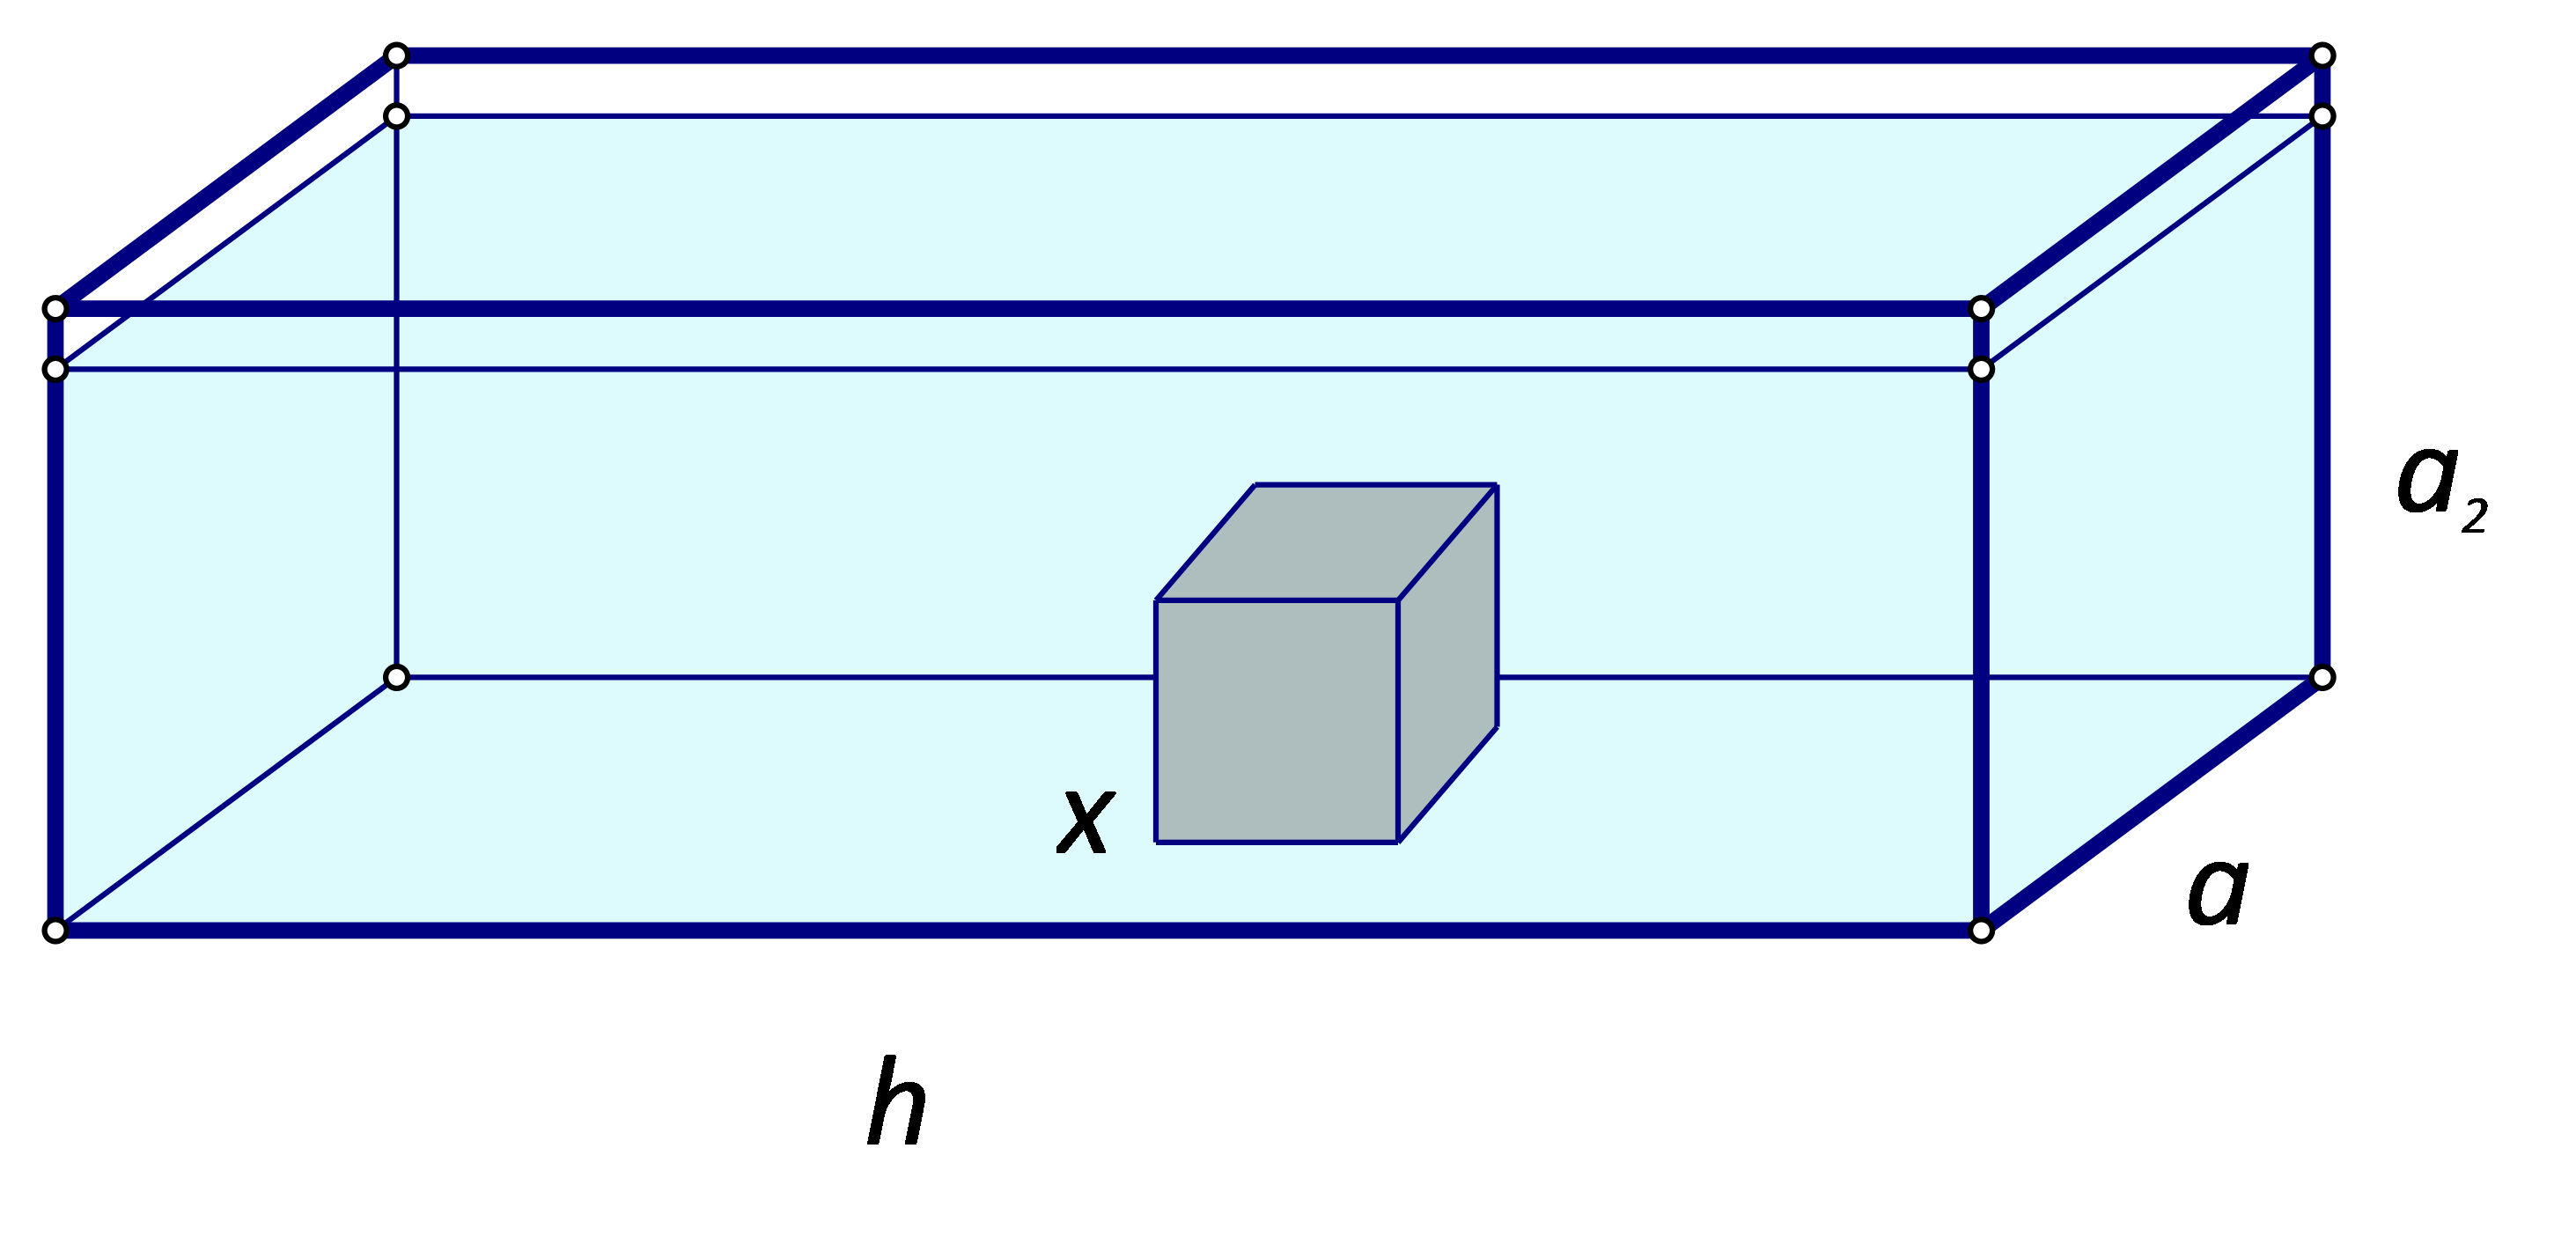 Slika prikazuje prizmu iz zadatka u koju je ubačena kockica.